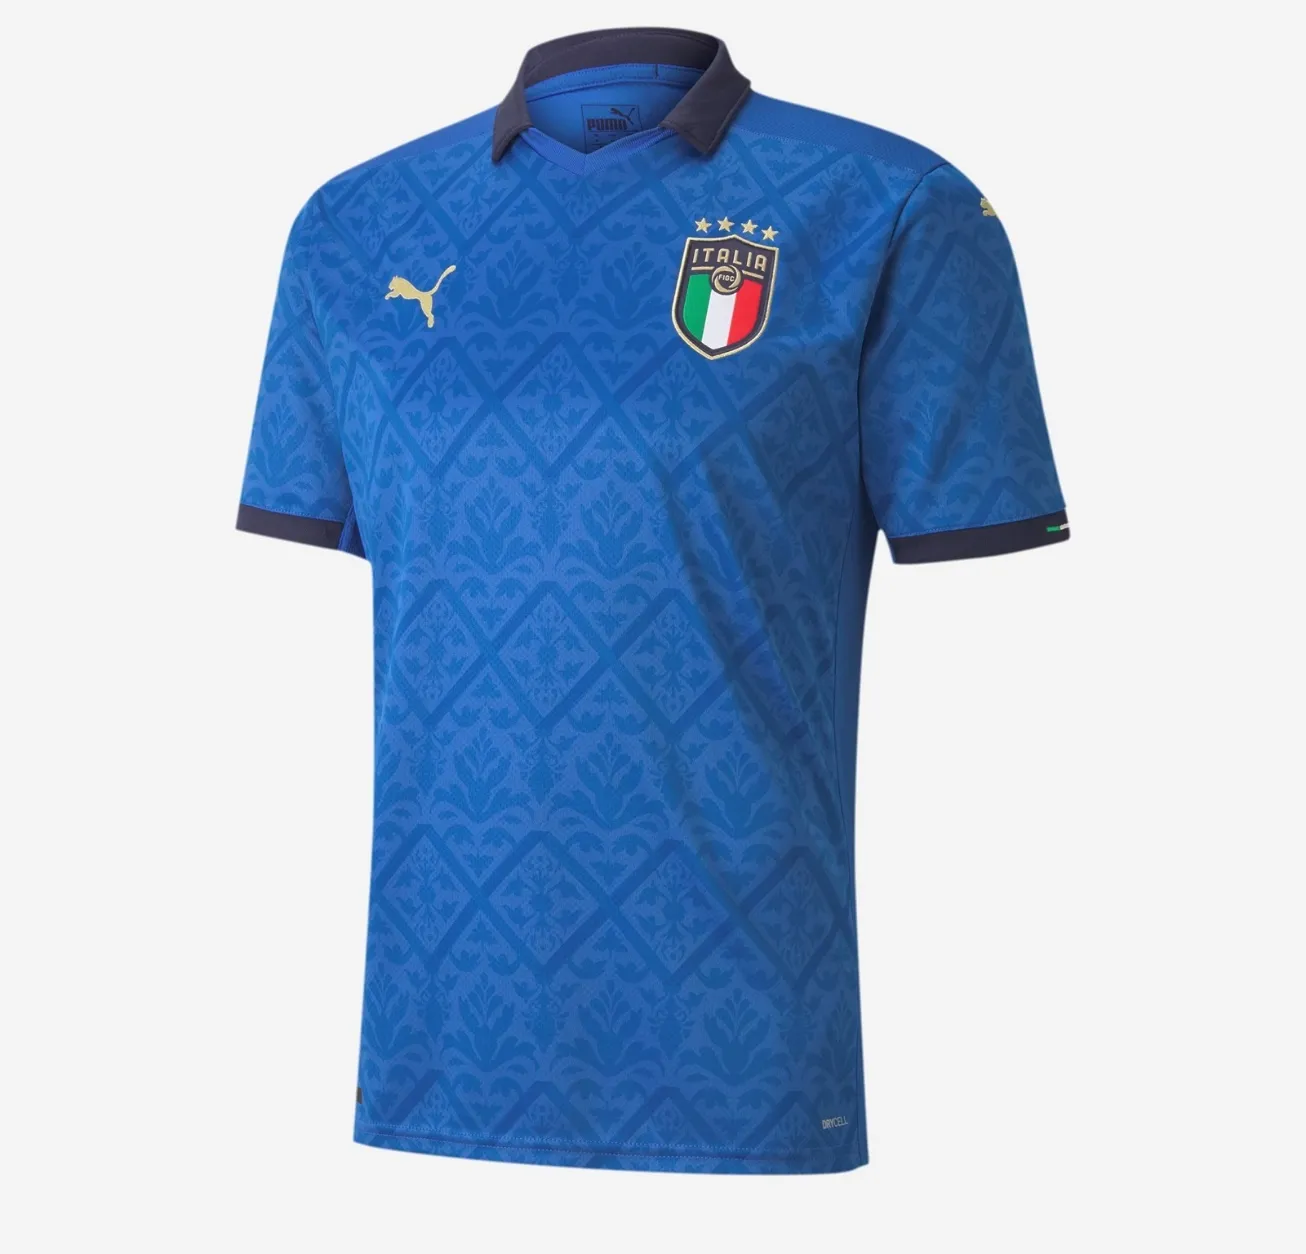 FIFA WORLD CUP | เสื้อฟุตบอลทีมชาติ อิตาลี เสื้อบอล เสื้อผู้ชาย เสื้อผู้ใหญ่ งานดีมาก คุณภาพสูง เกรด-A ฤดูกาล 2020-2021